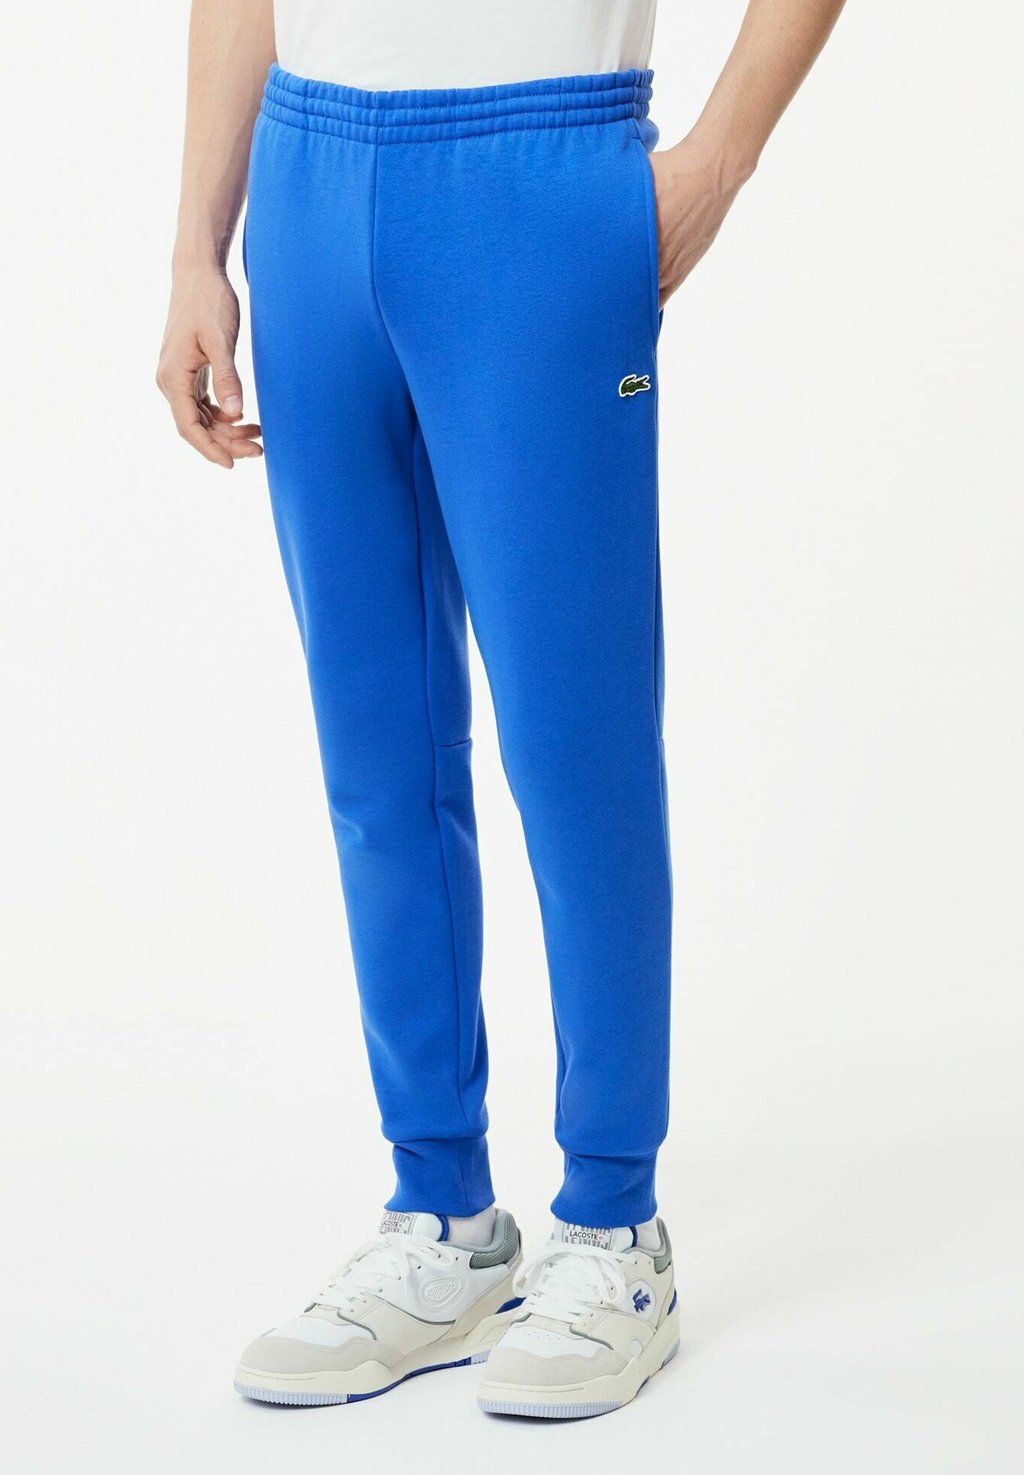 Спортивные брюки LIFESTYLE Lacoste, вереск синий